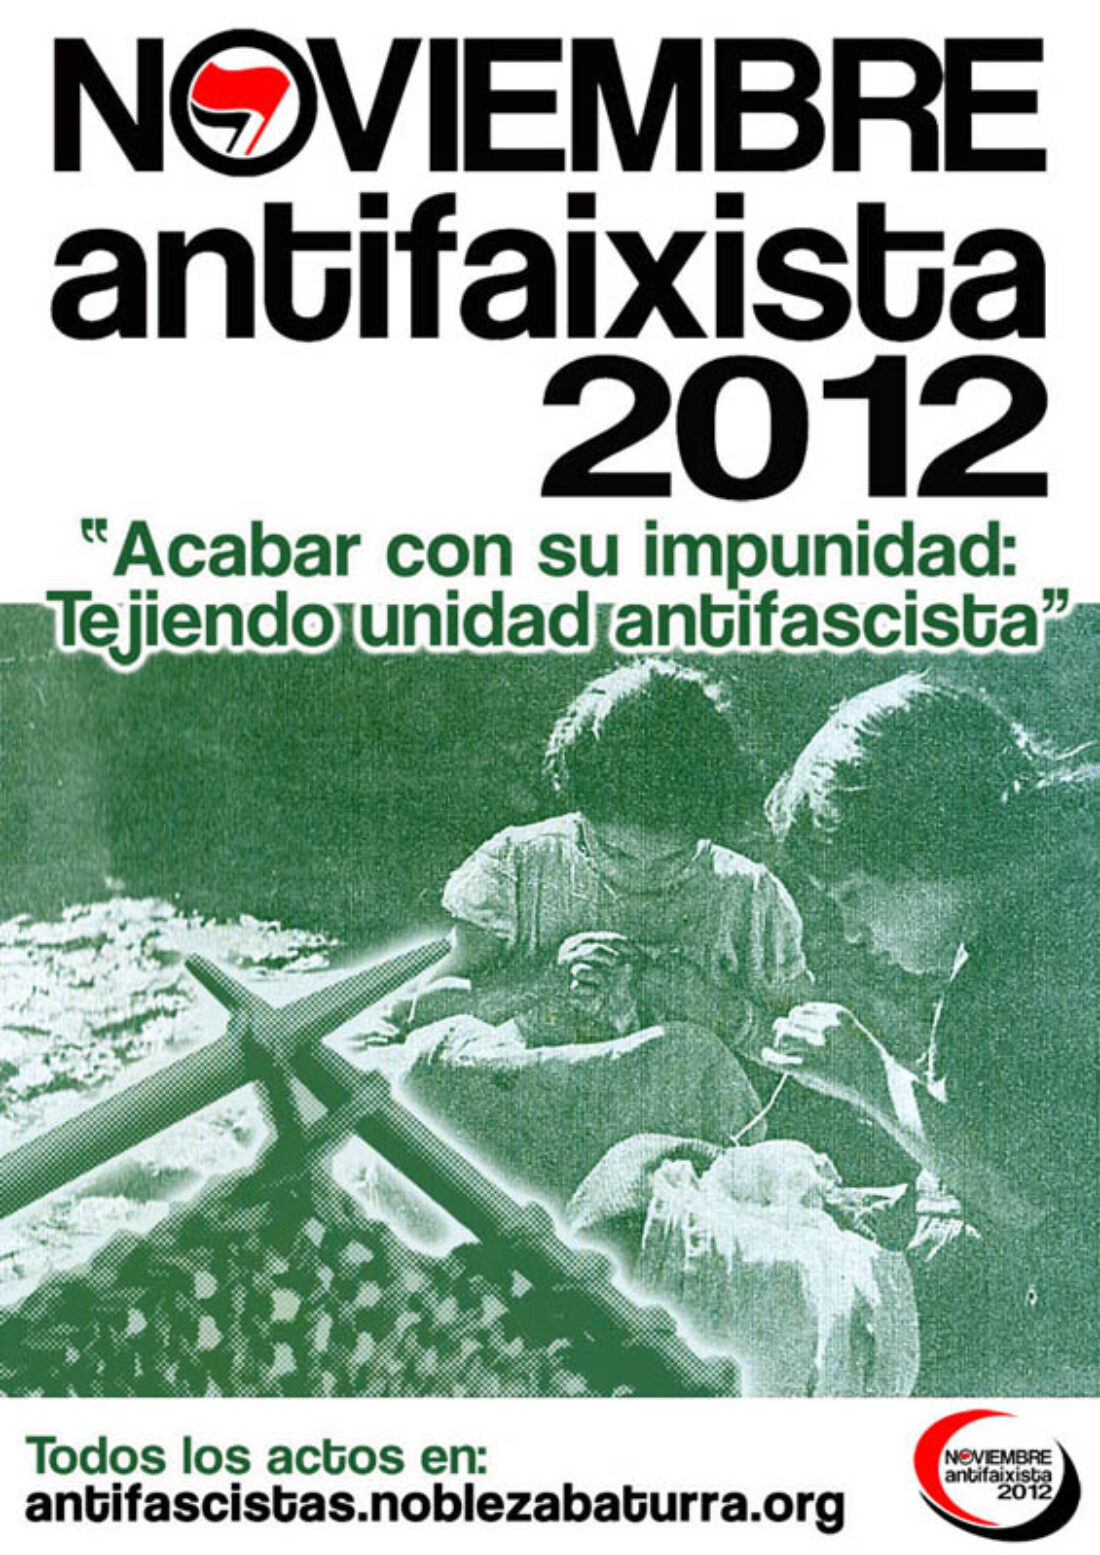 Noviembre Antifaixista 2012: “Acabar con su impunidad: Tejiendo unidad antifascista”